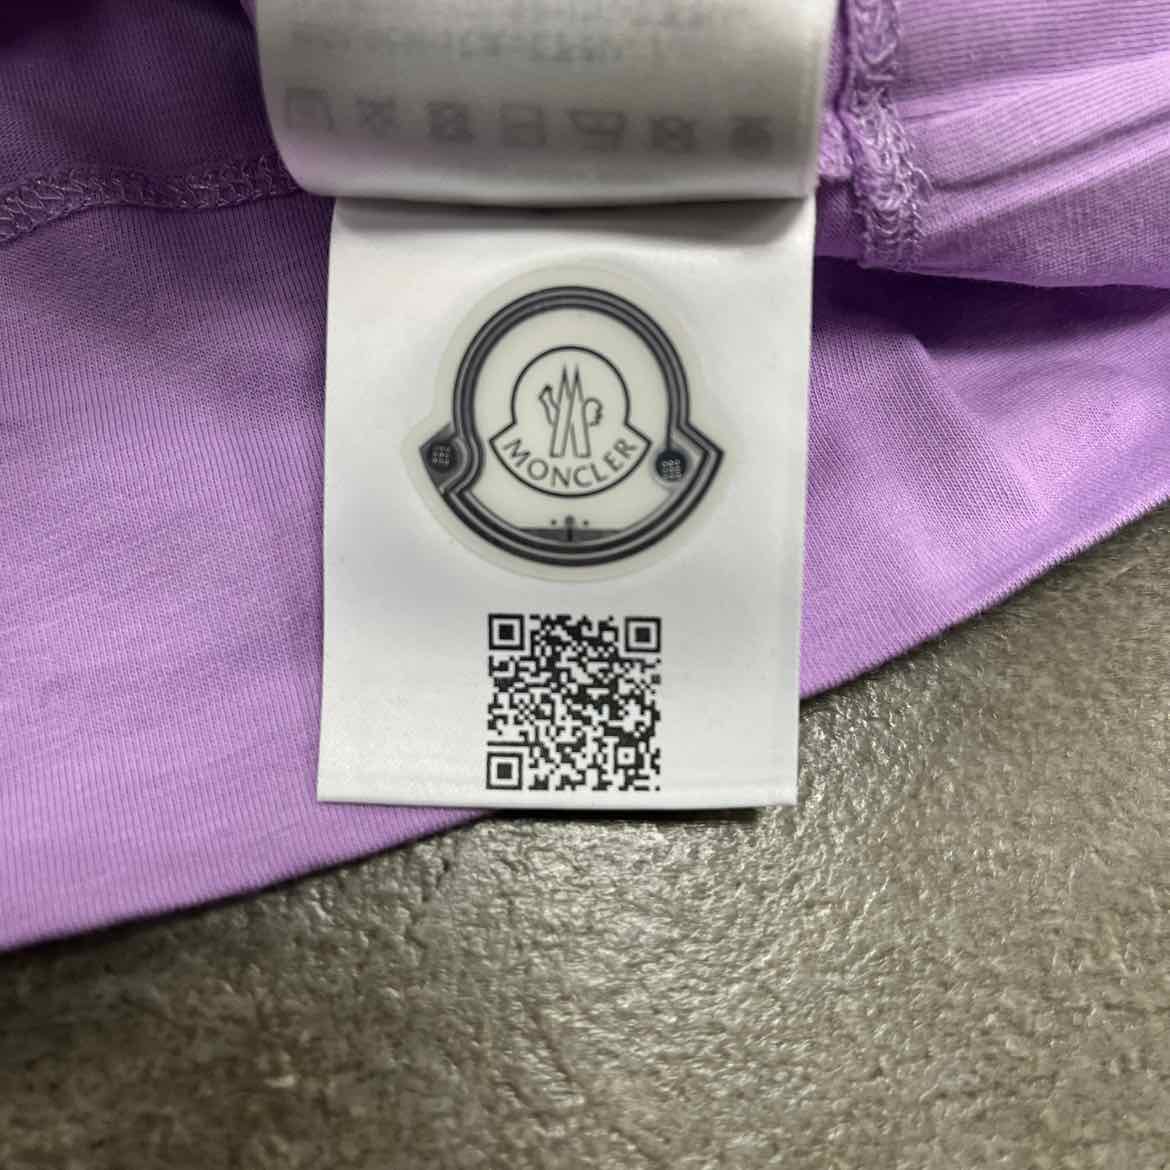 Moncler T-Shirt "PASTEL" Purple New Size 14